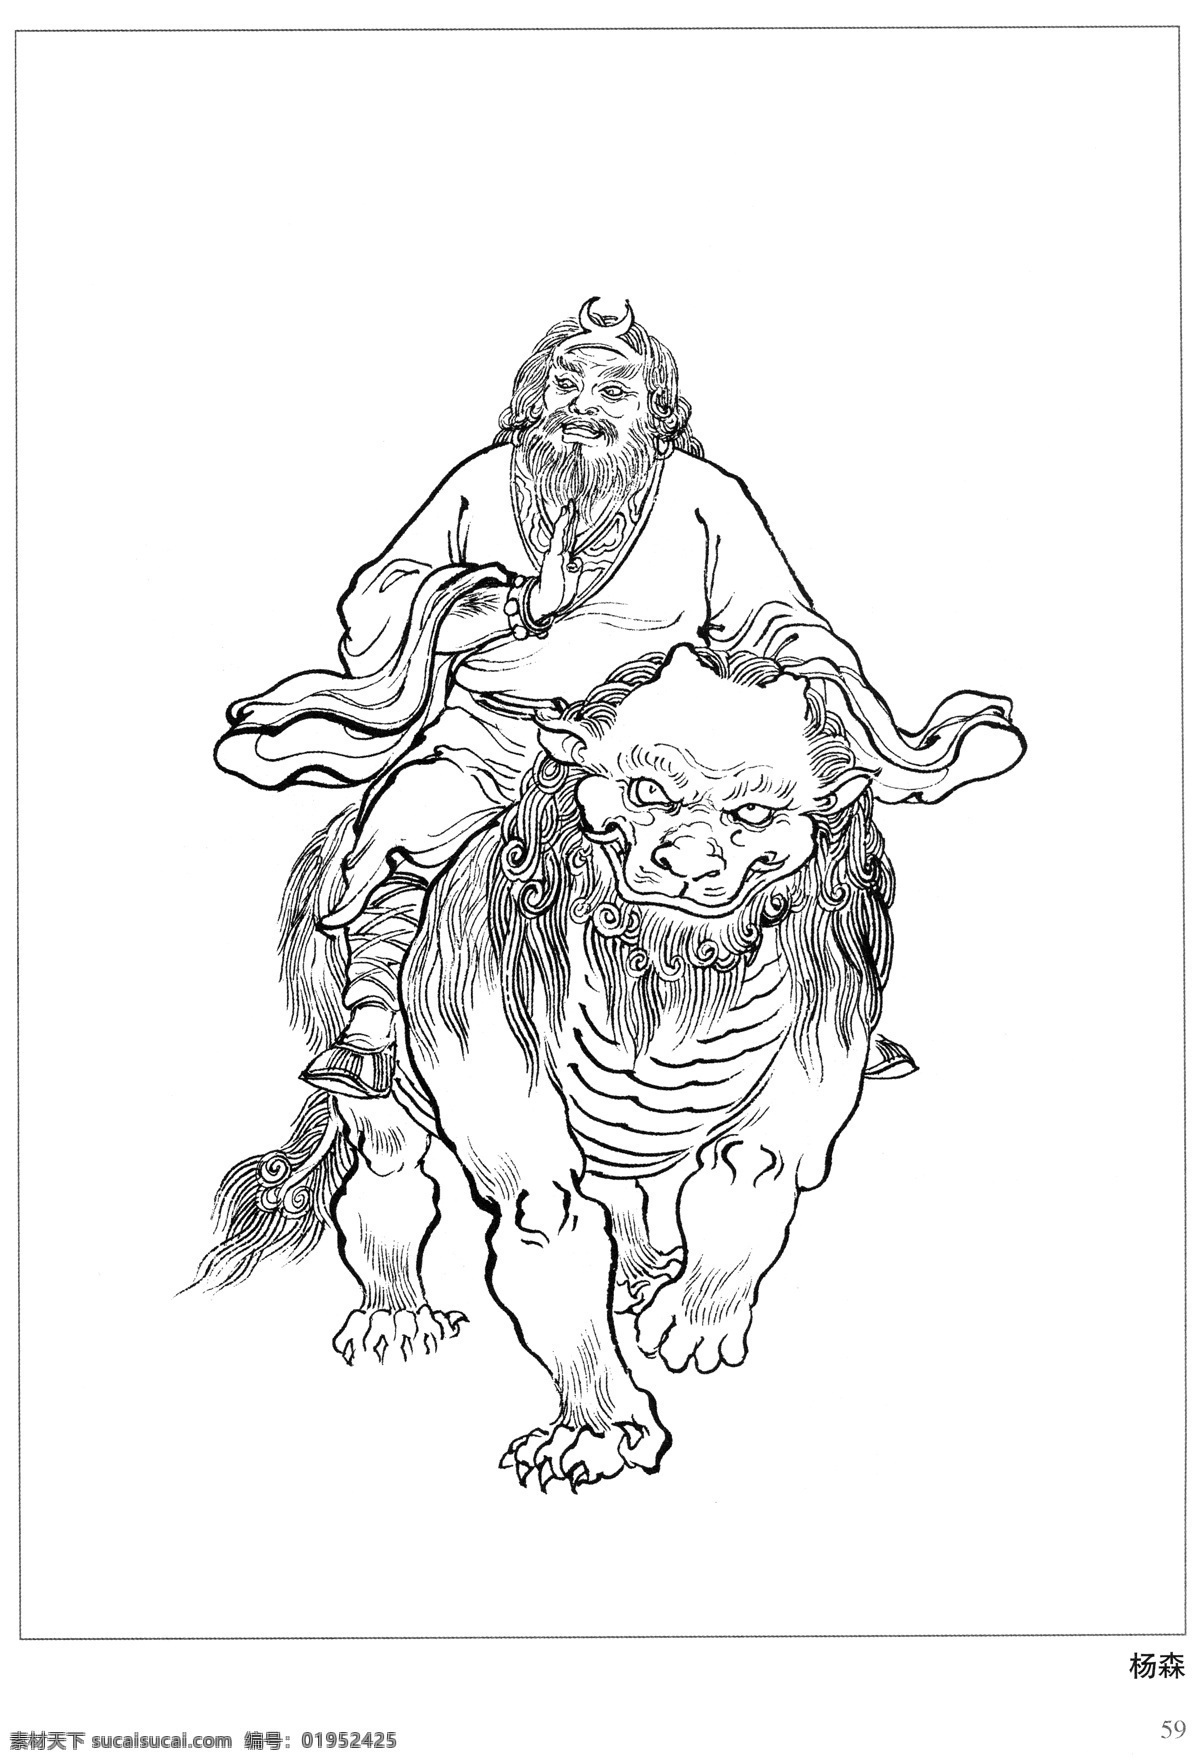 杨森 封神演义 古代 神仙 白描 人物 图 文化艺术 传统文化